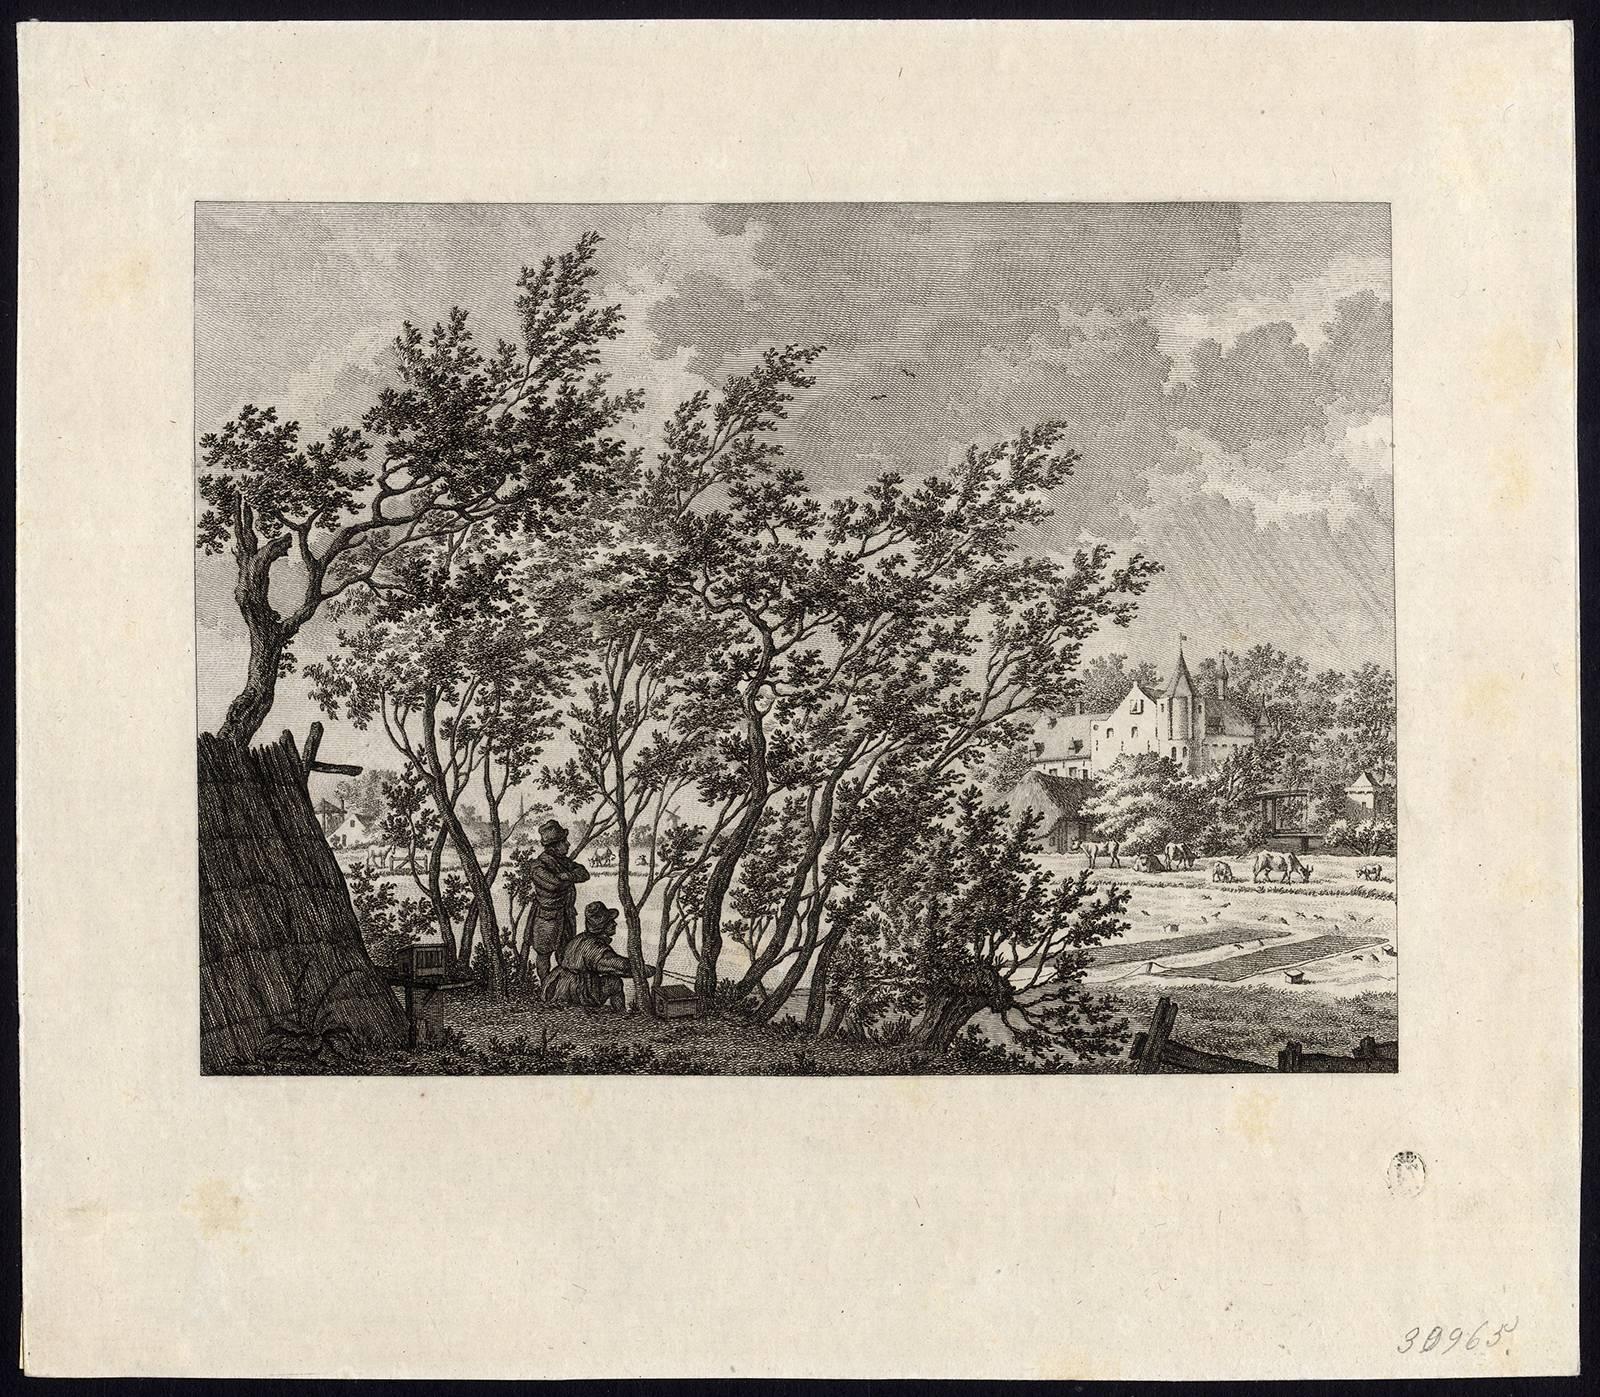 De twaalf maanden naar tekeningen van Jacob Cats - Beige Landscape Print by Isaac de Wit Jansz